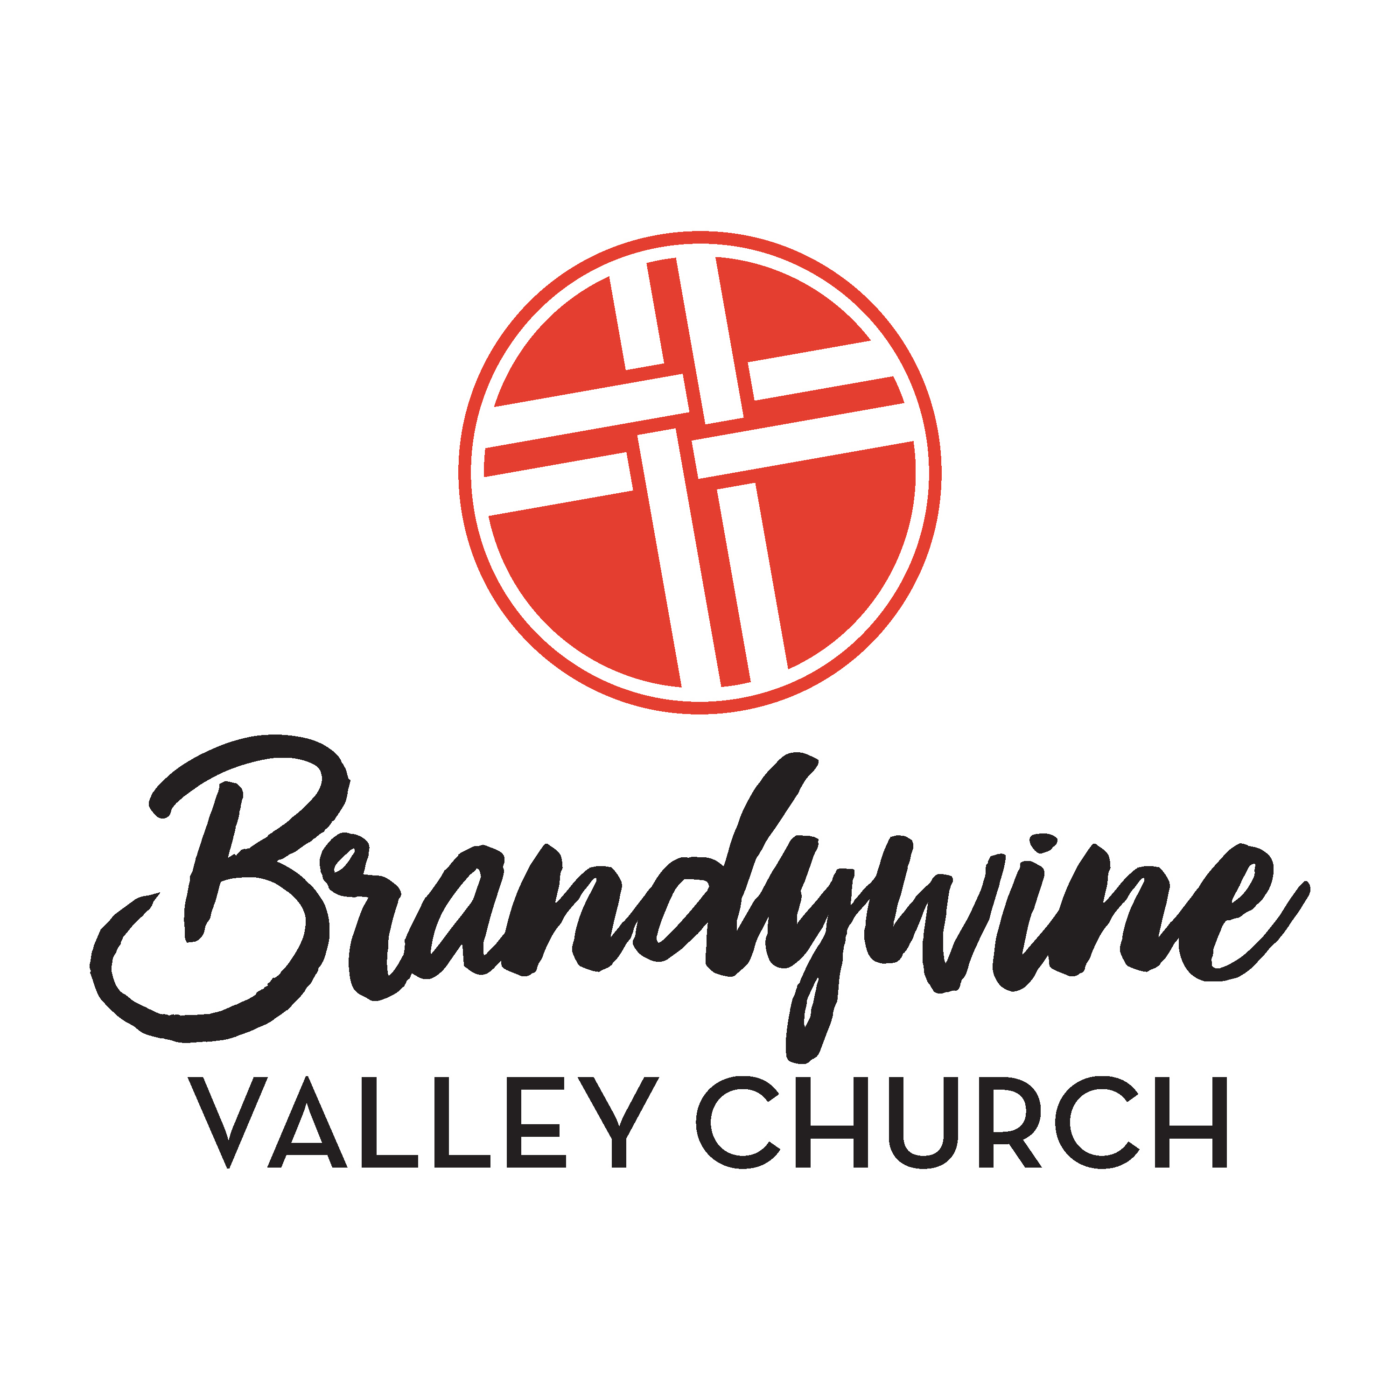 Brandywine Valley Church